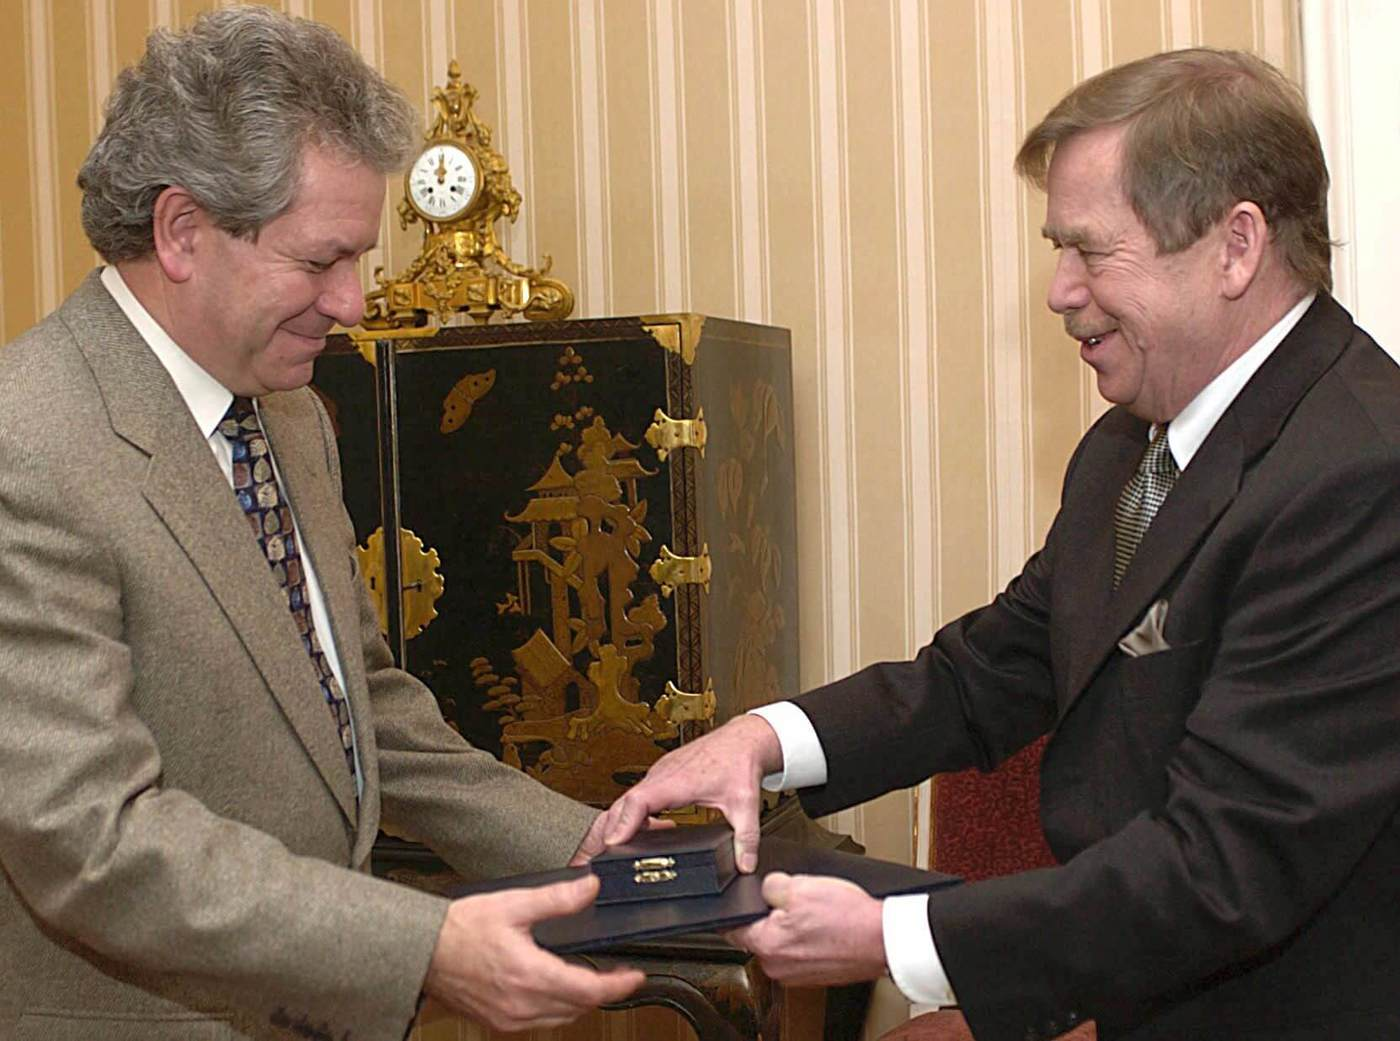 Jiří Bělohlávek receiving the Medal of Merit of the First Grade from Václav Havel